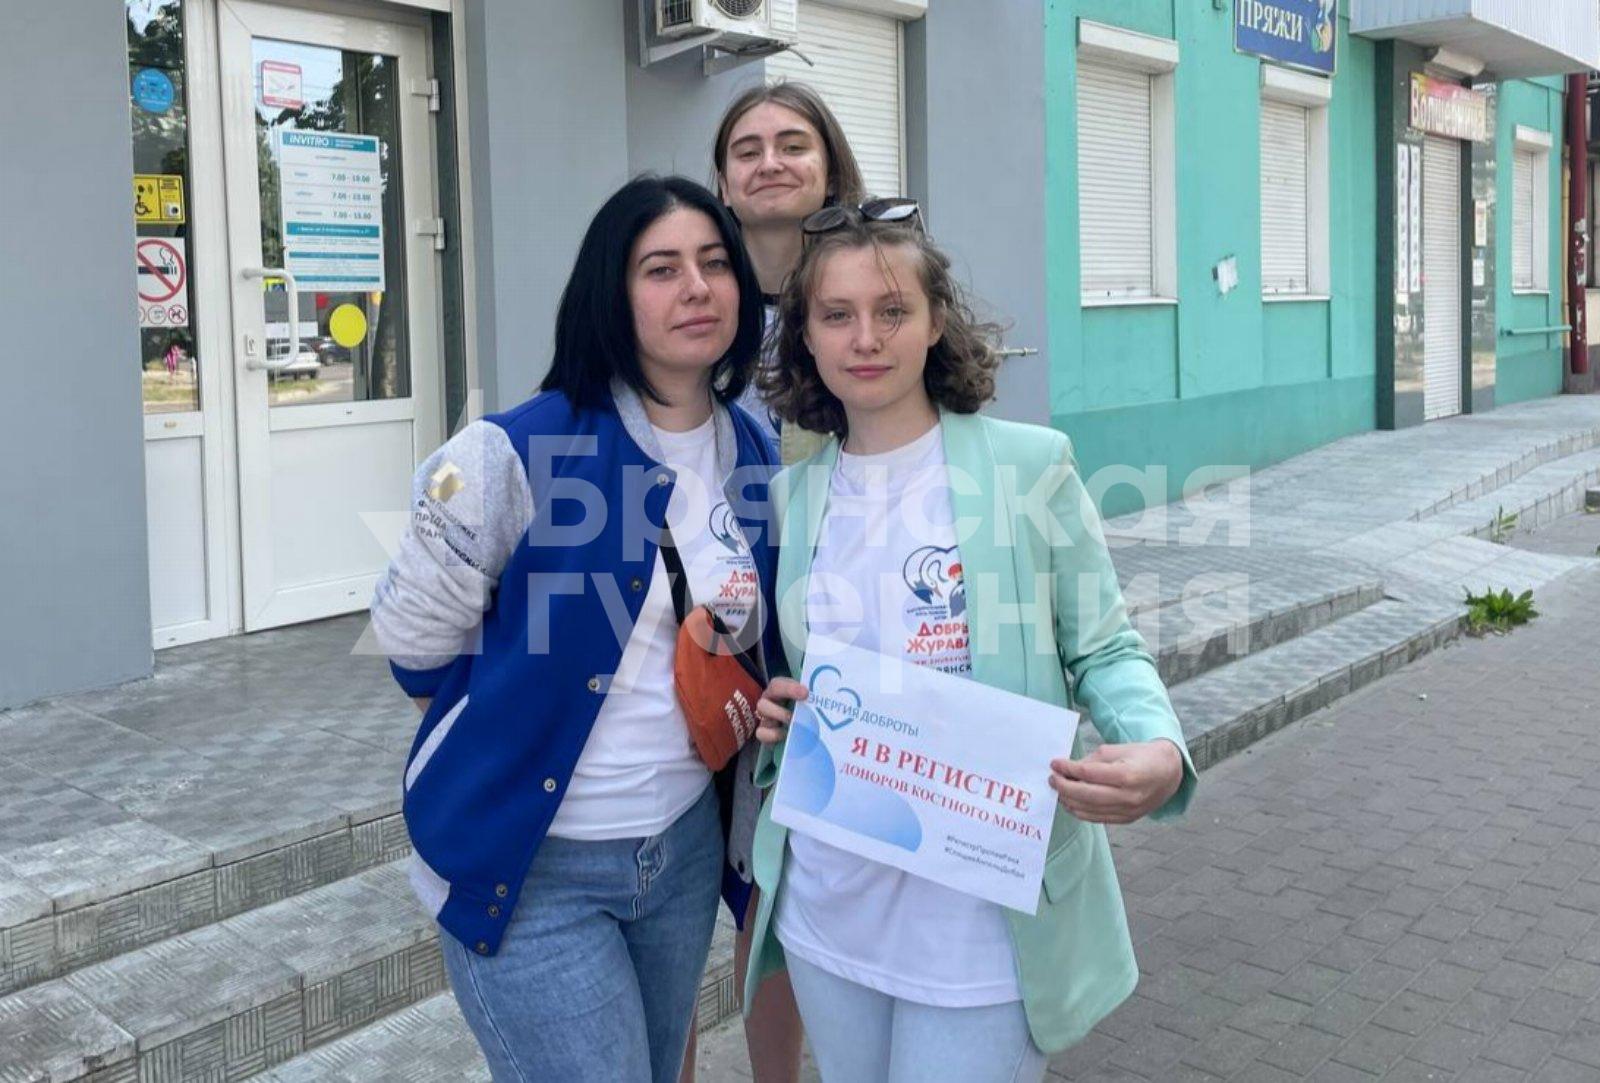 Брянск участвует во всероссийской акции по вступлению в регистр доноров костного мозга